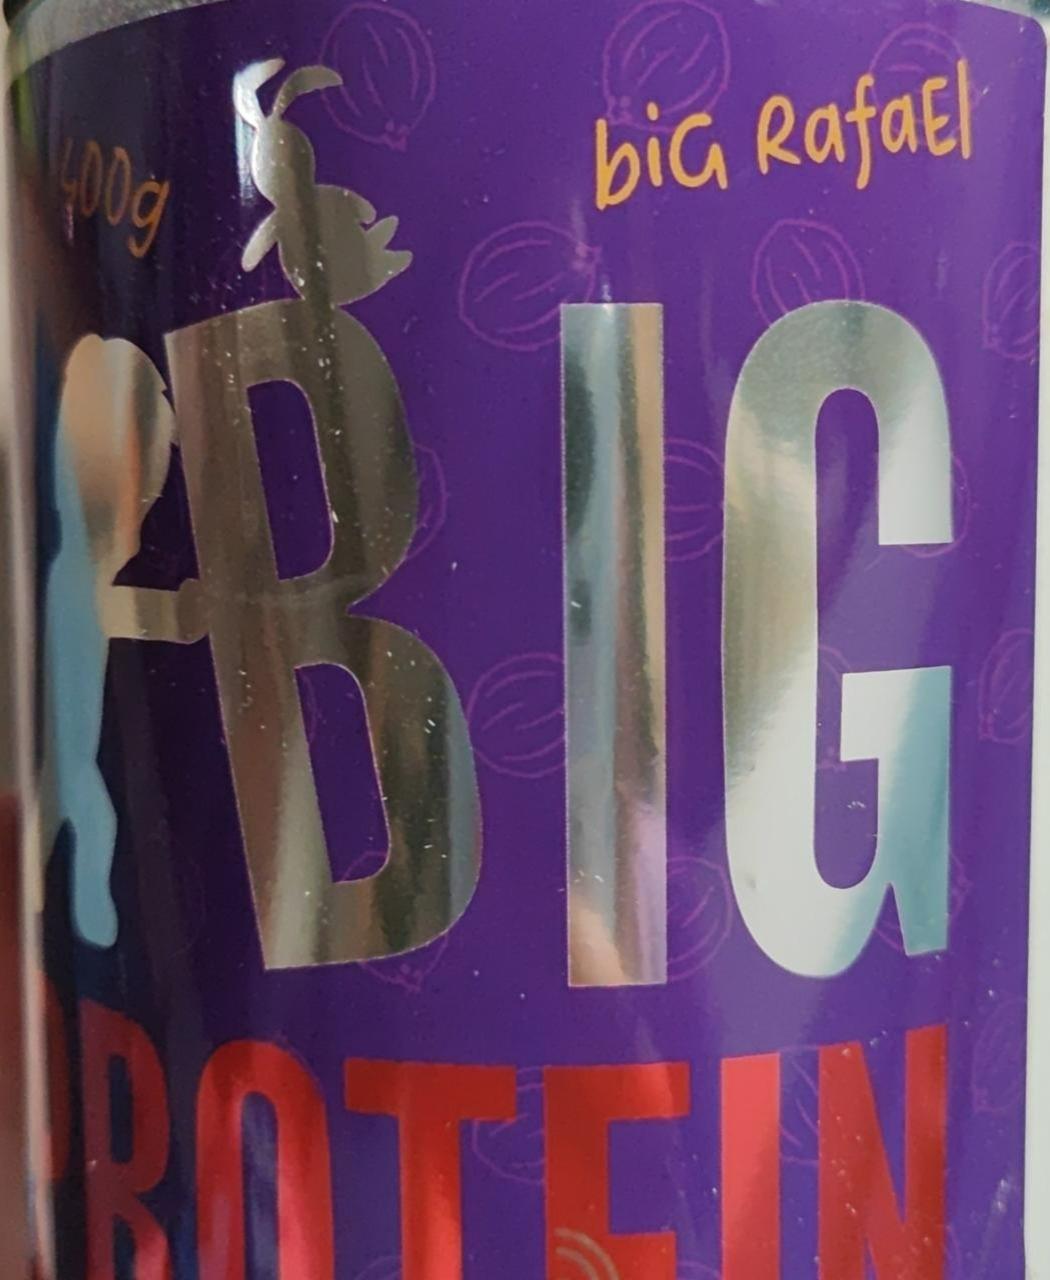 Fotografie - Big Protein Big Rafael Big Boy